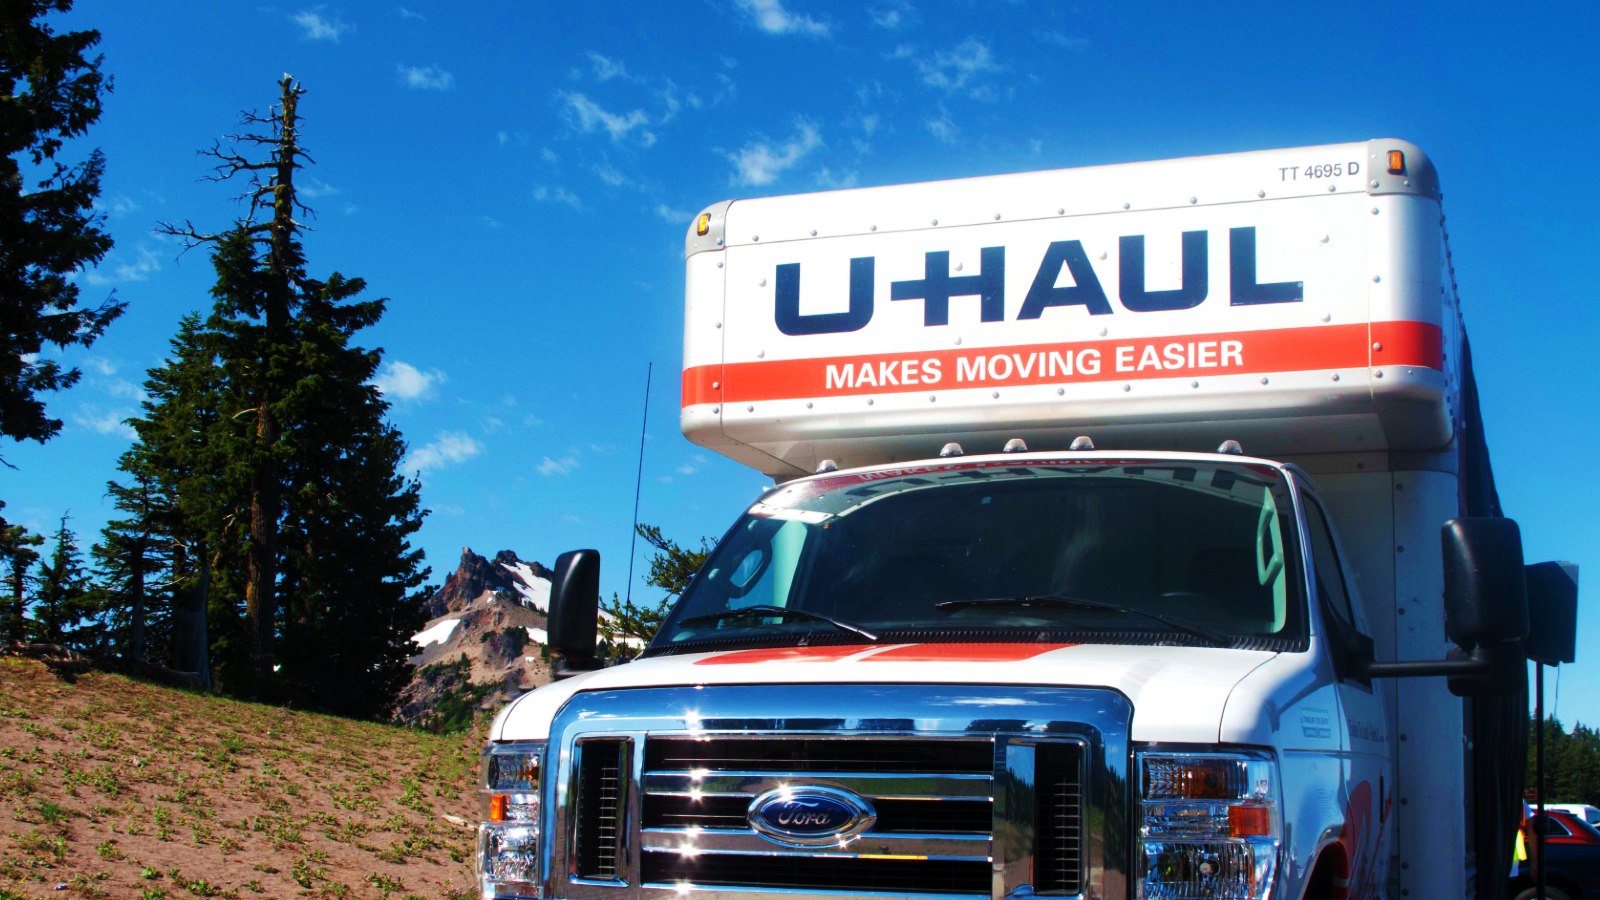 About U-Haul Truck Rental Service